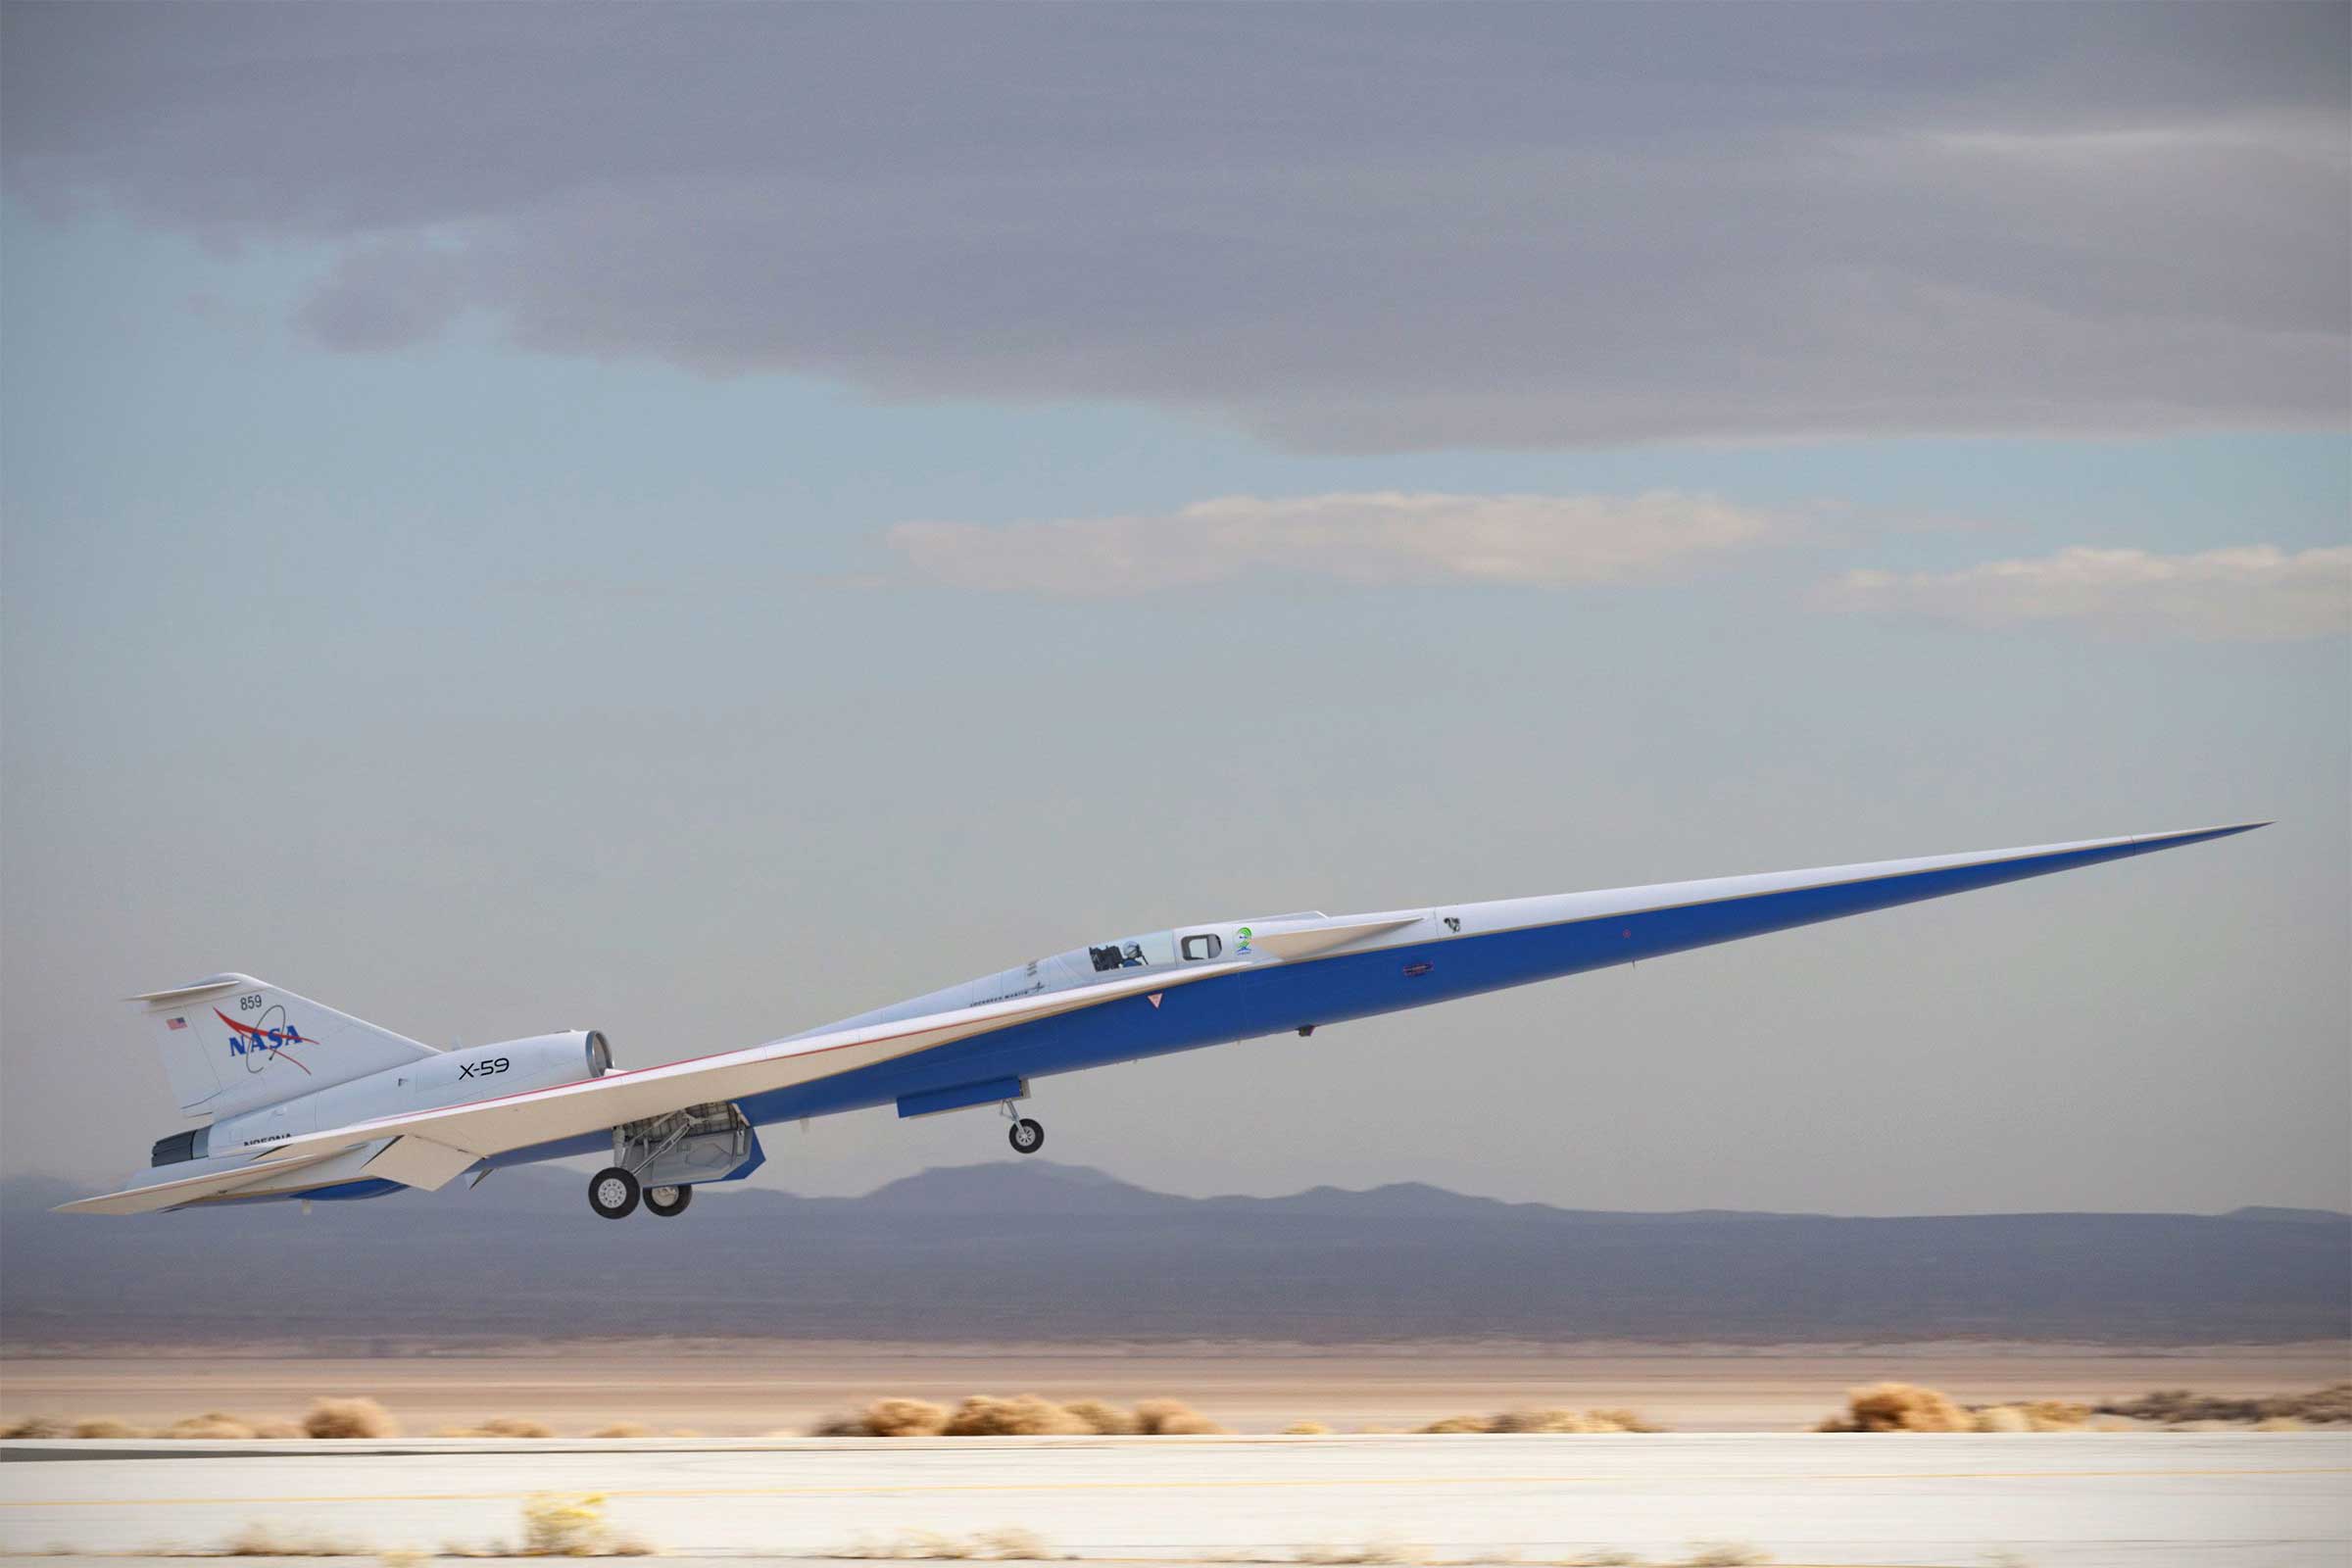 پرواز با هواپیمای مافوق صوت X-59 چگونه خواهد بود؟